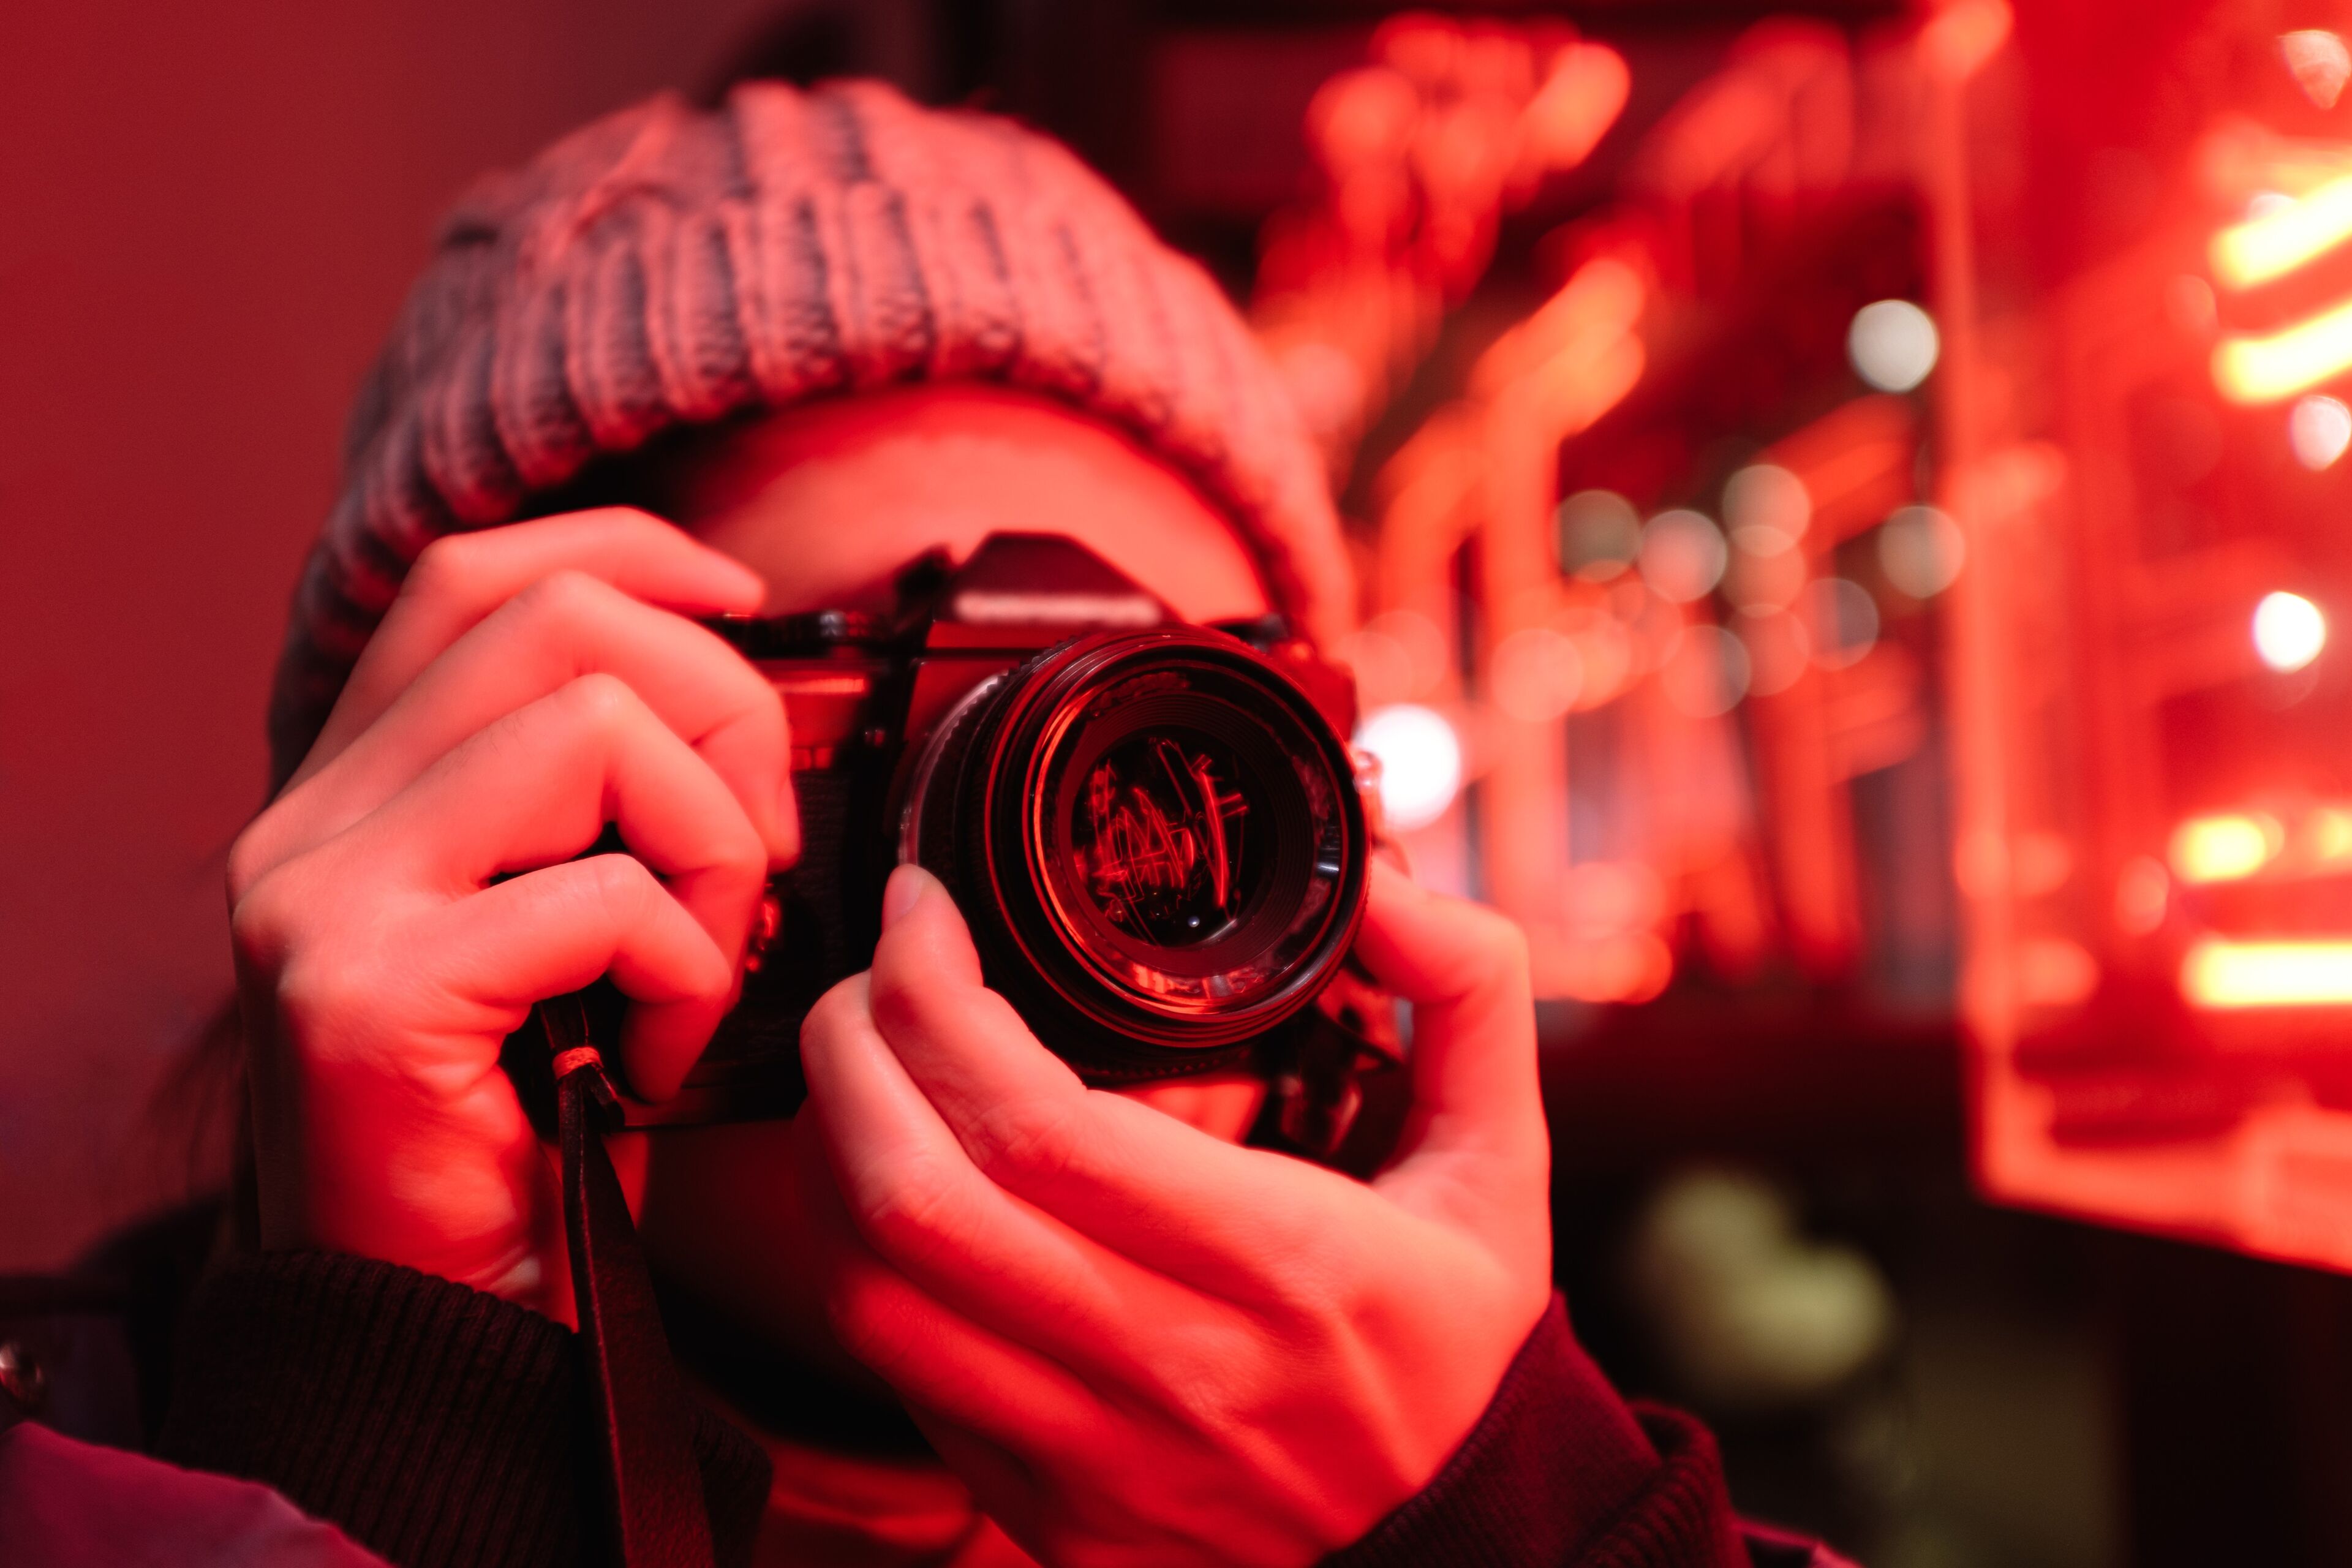 Una persona amb un barret de punt està fent una foto amb una càmera DSLR, il·luminada per una llum de neó vermell vibrant.